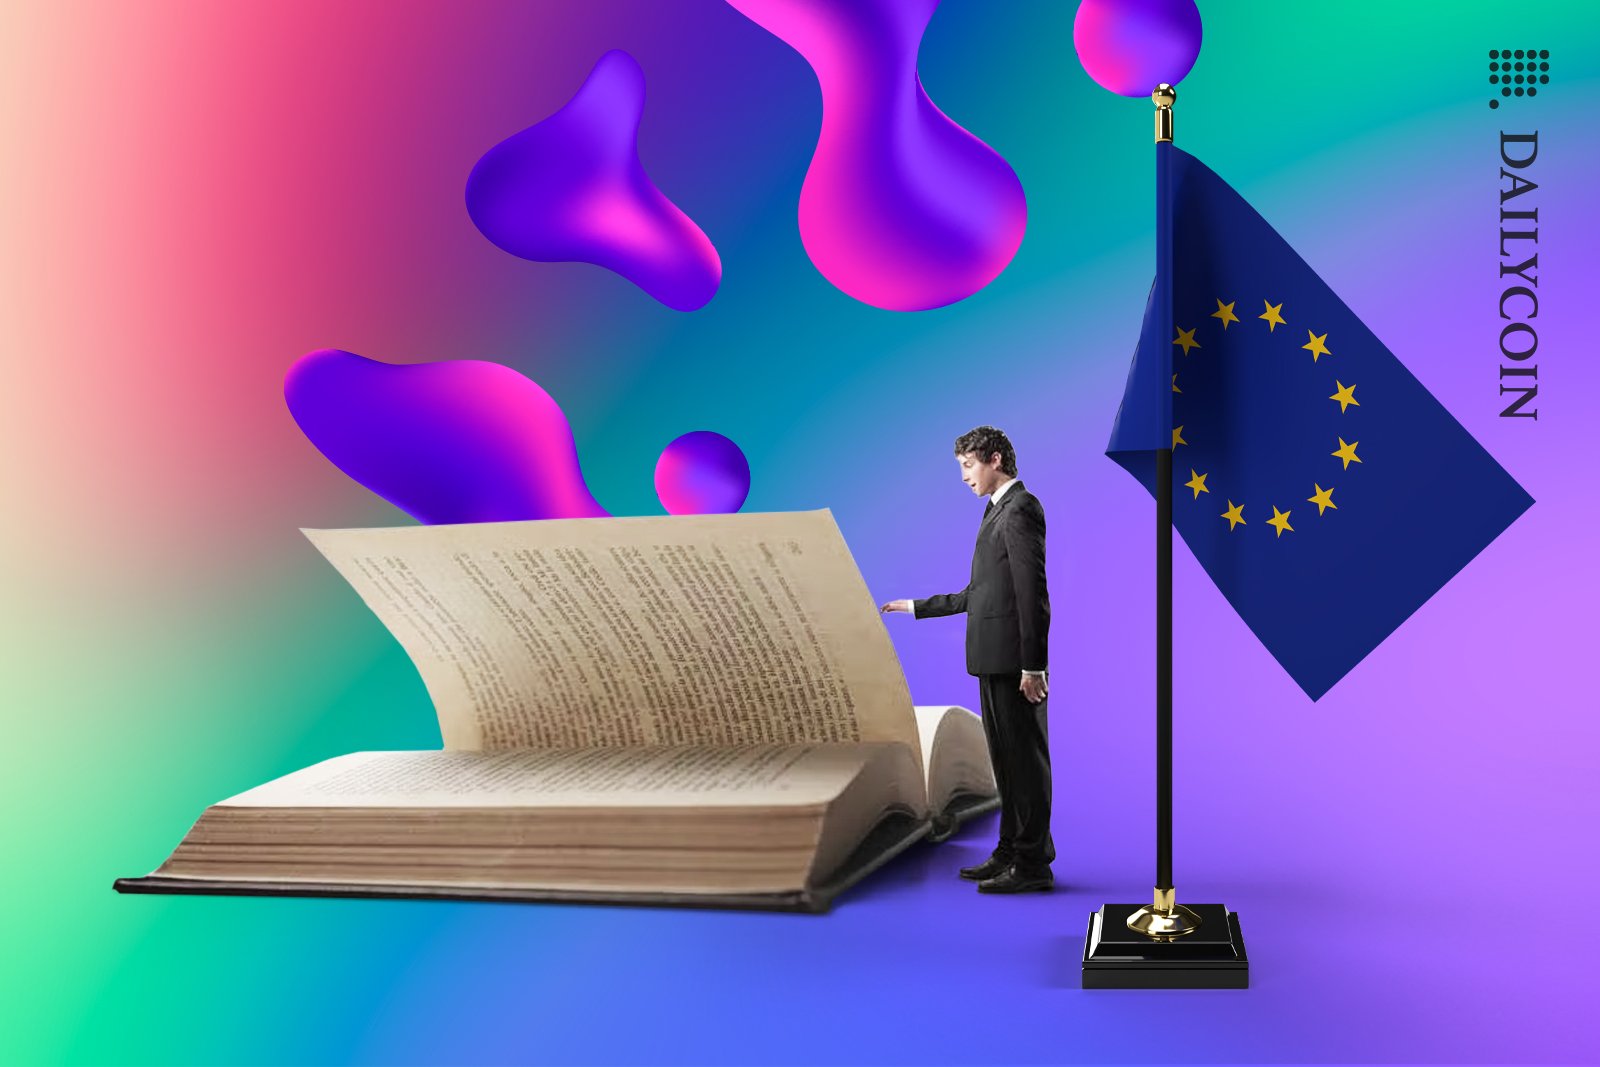 A tiny man reading a giant book next to a EU flag.